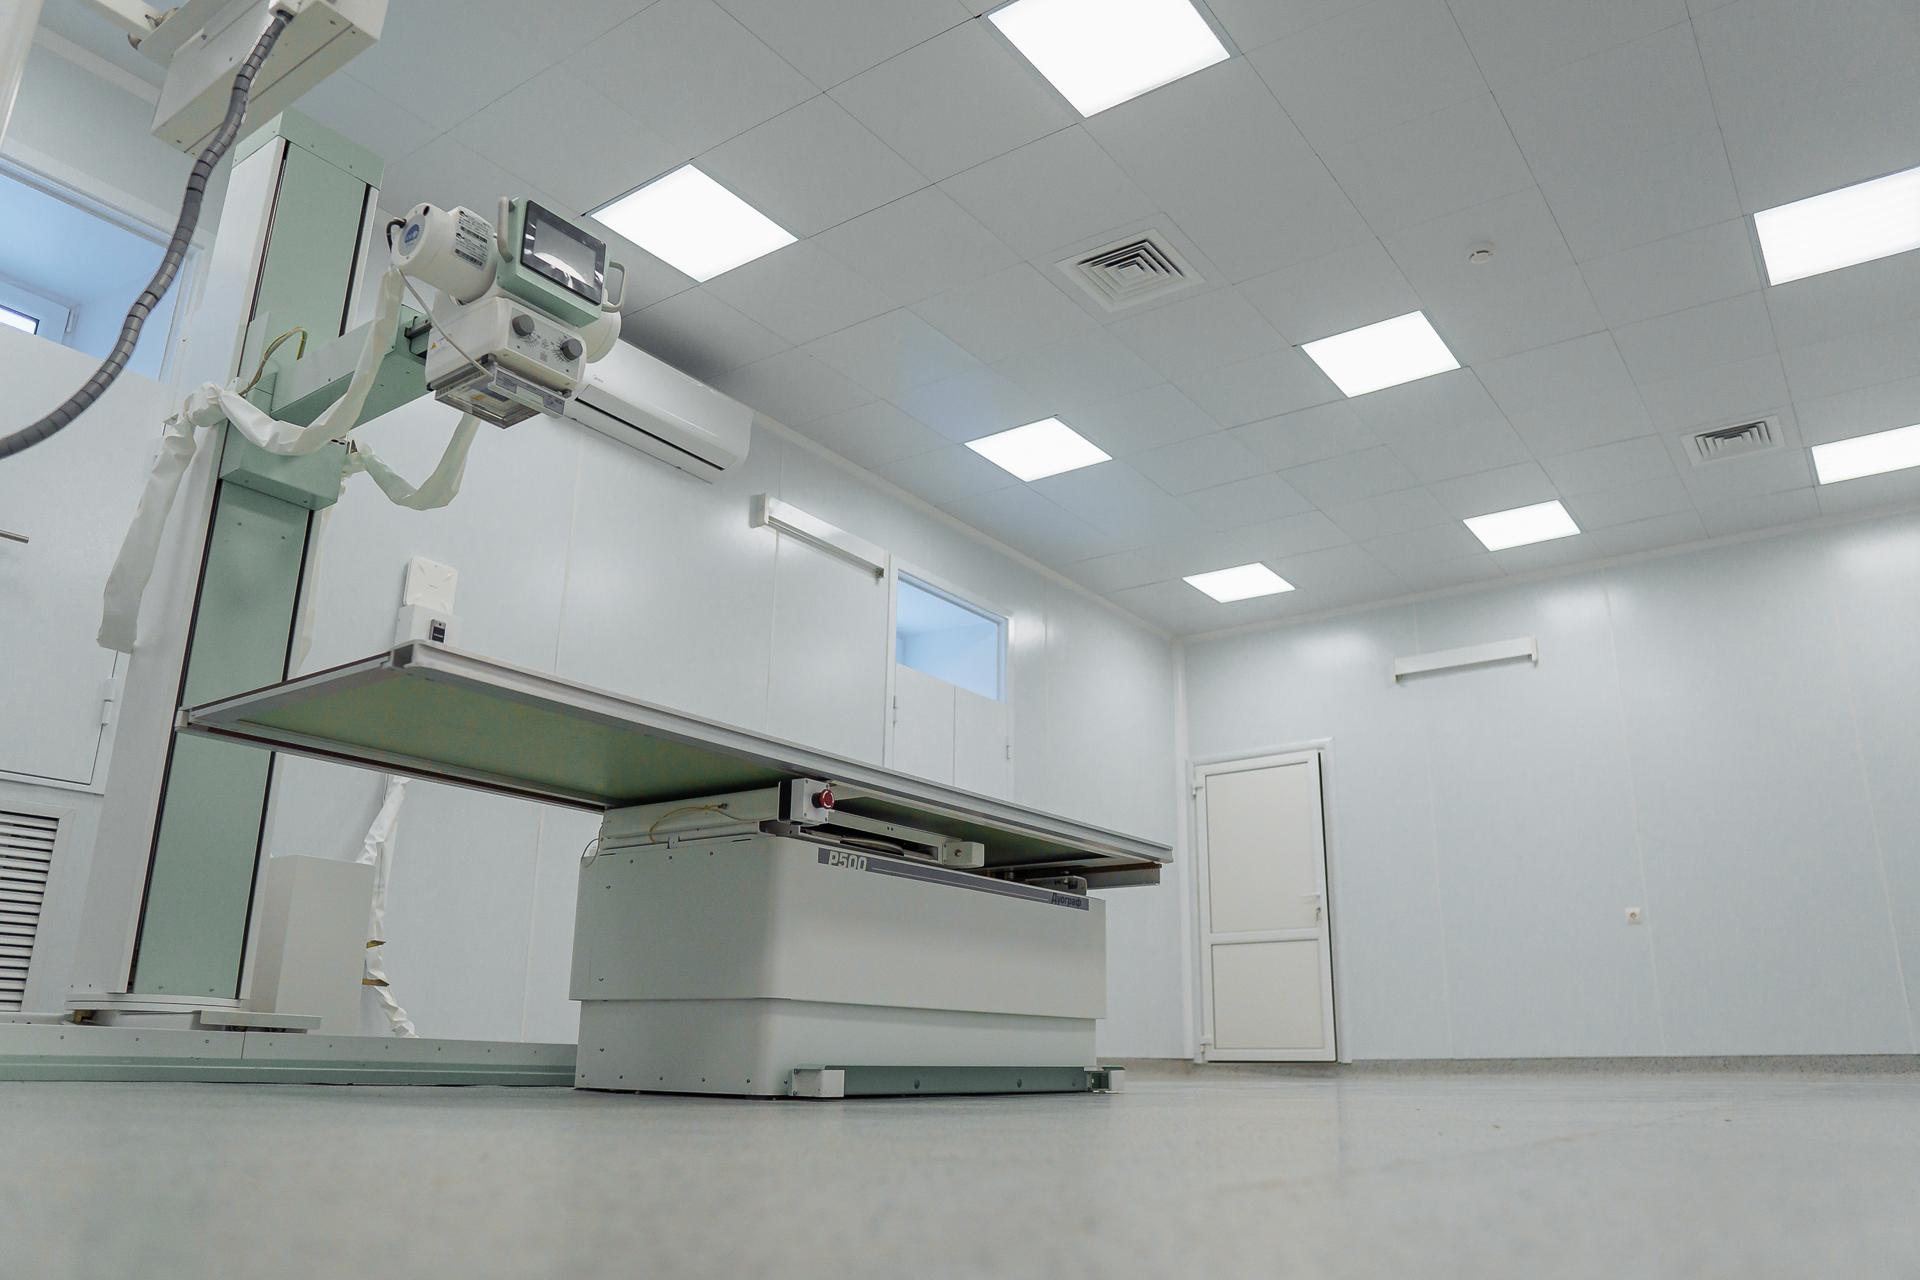 В орехово-зуевской поликлинике № 1 на Шулайкиной заработал новый рентген-аппарат